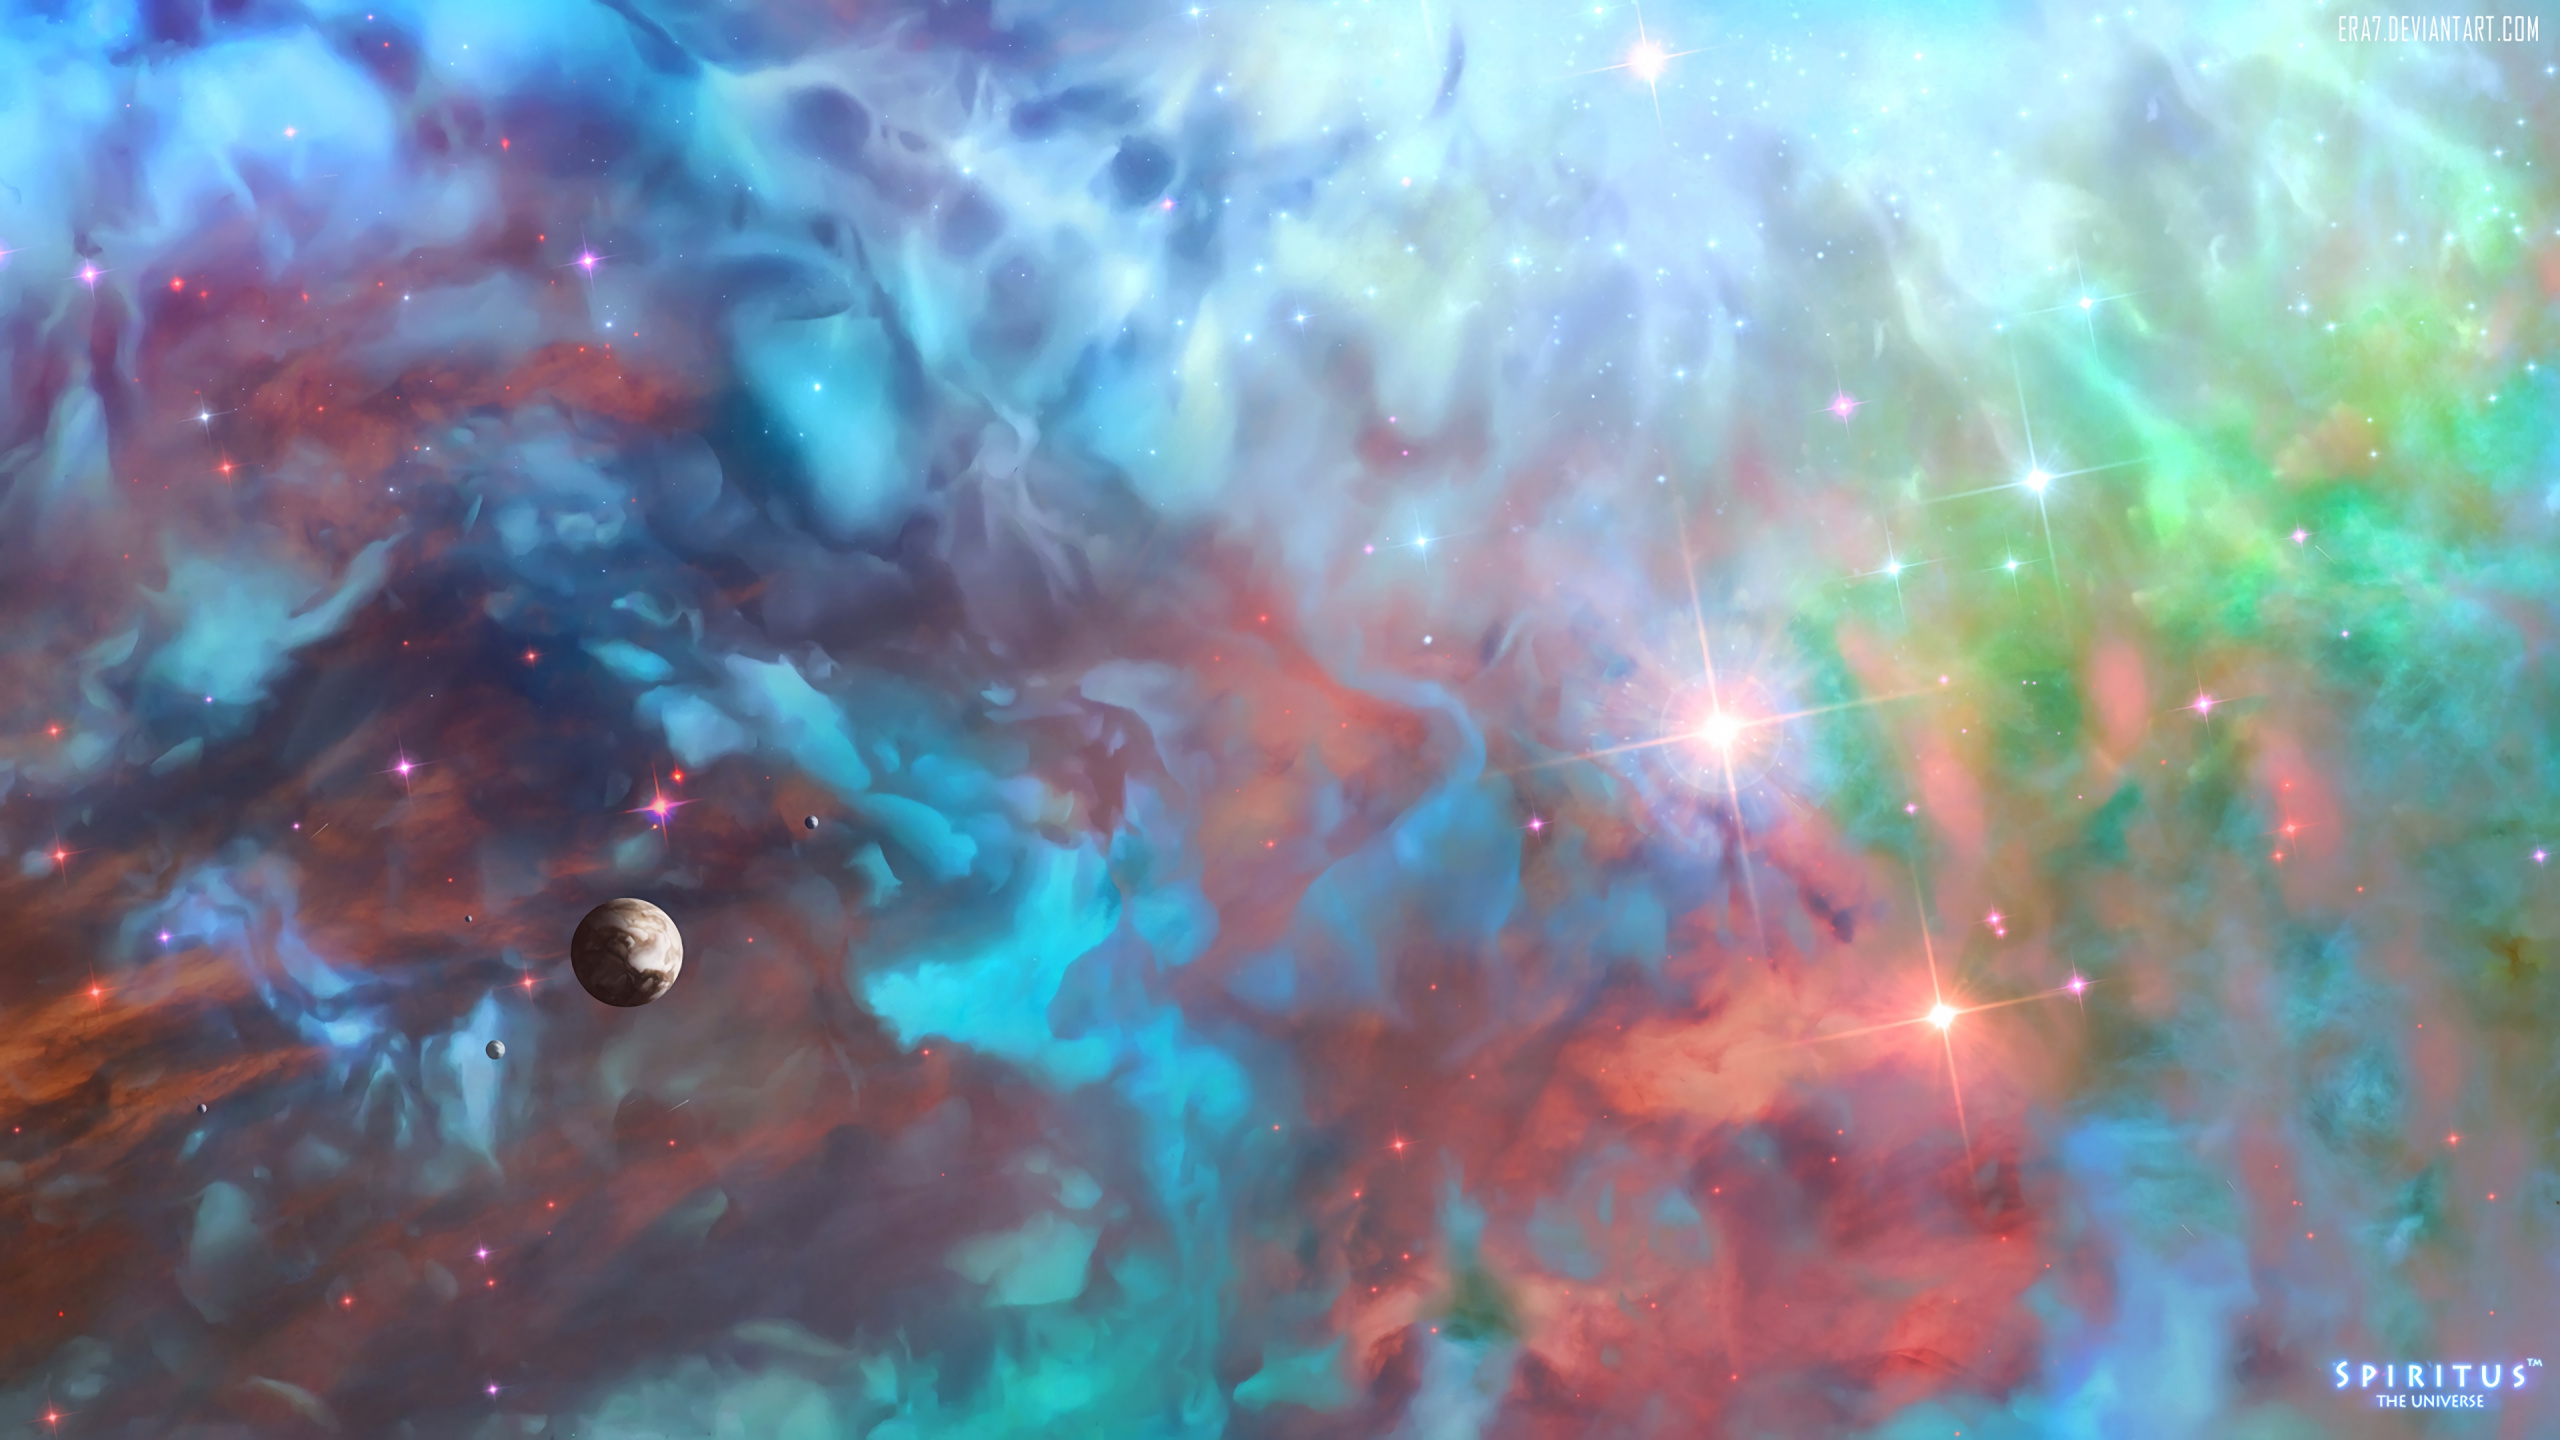 Blaue Und Weiße Galaxieillustration. Wallpaper in 2560x1440 Resolution